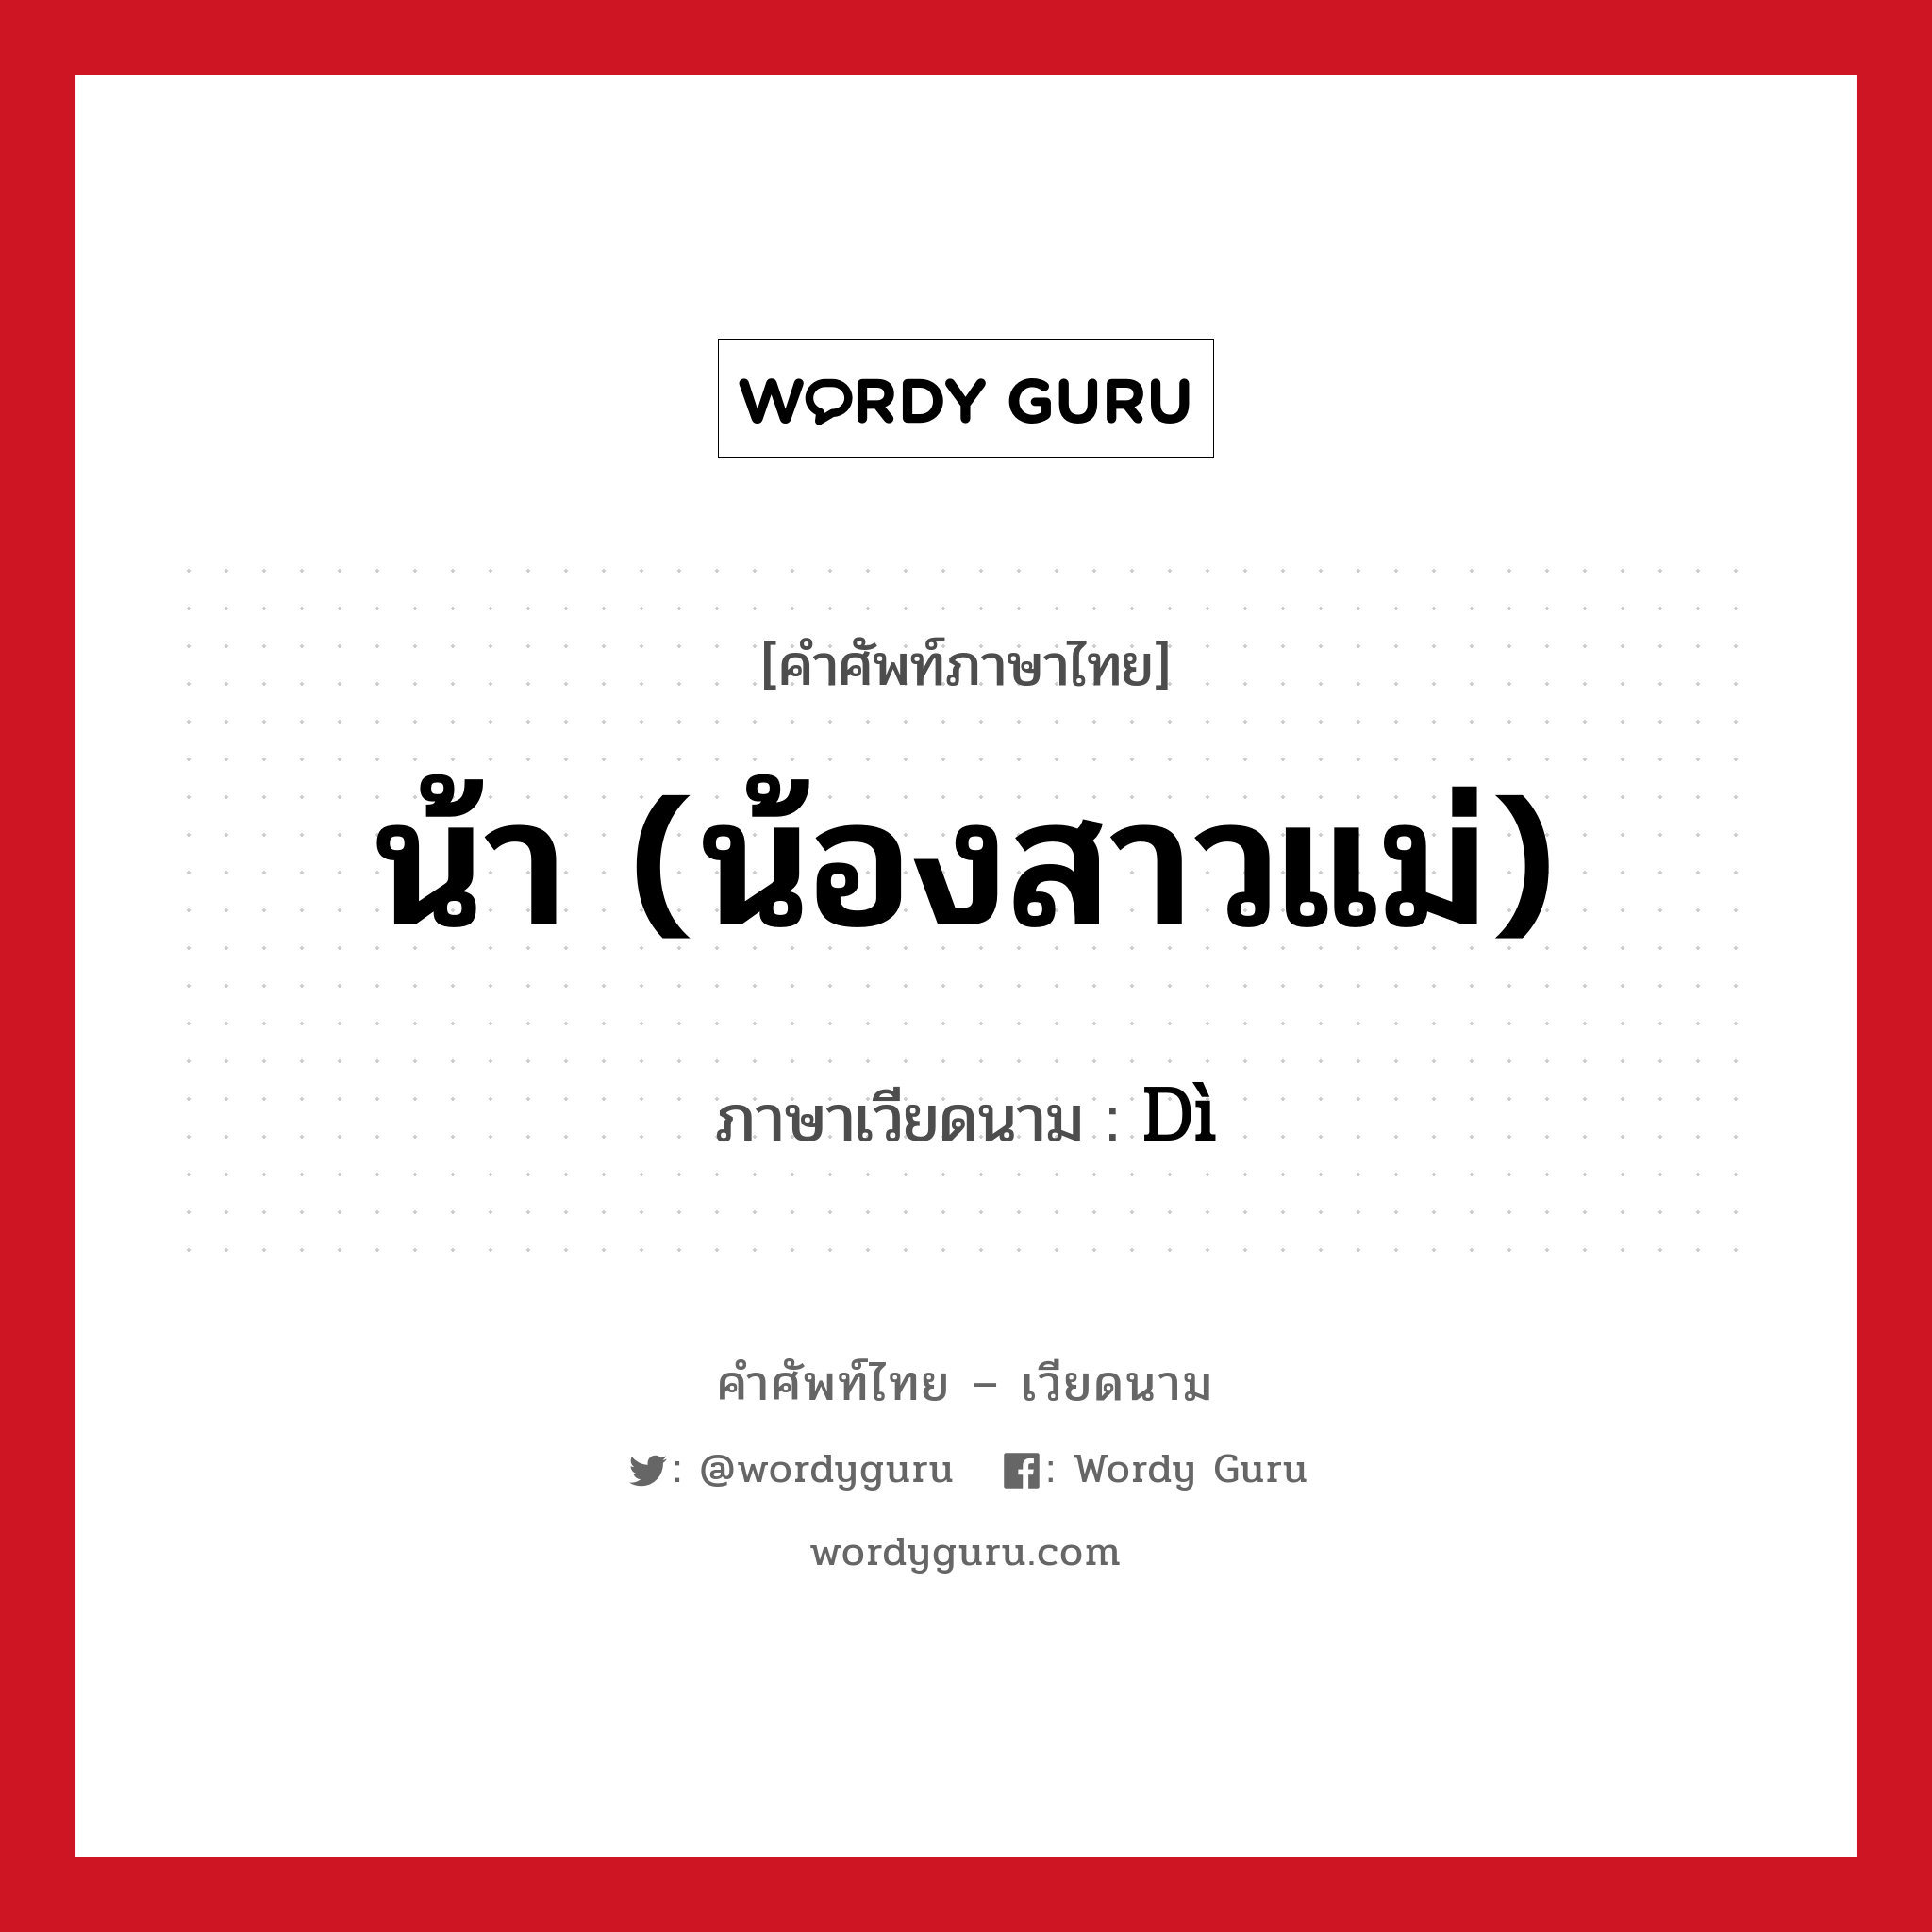 น้า (น้องสาวแม่) ภาษาเวียดนามคืออะไร, คำศัพท์ภาษาไทย - เวียดนาม น้า (น้องสาวแม่) ภาษาเวียดนาม Dì หมวด เครือญาติ หมวด เครือญาติ